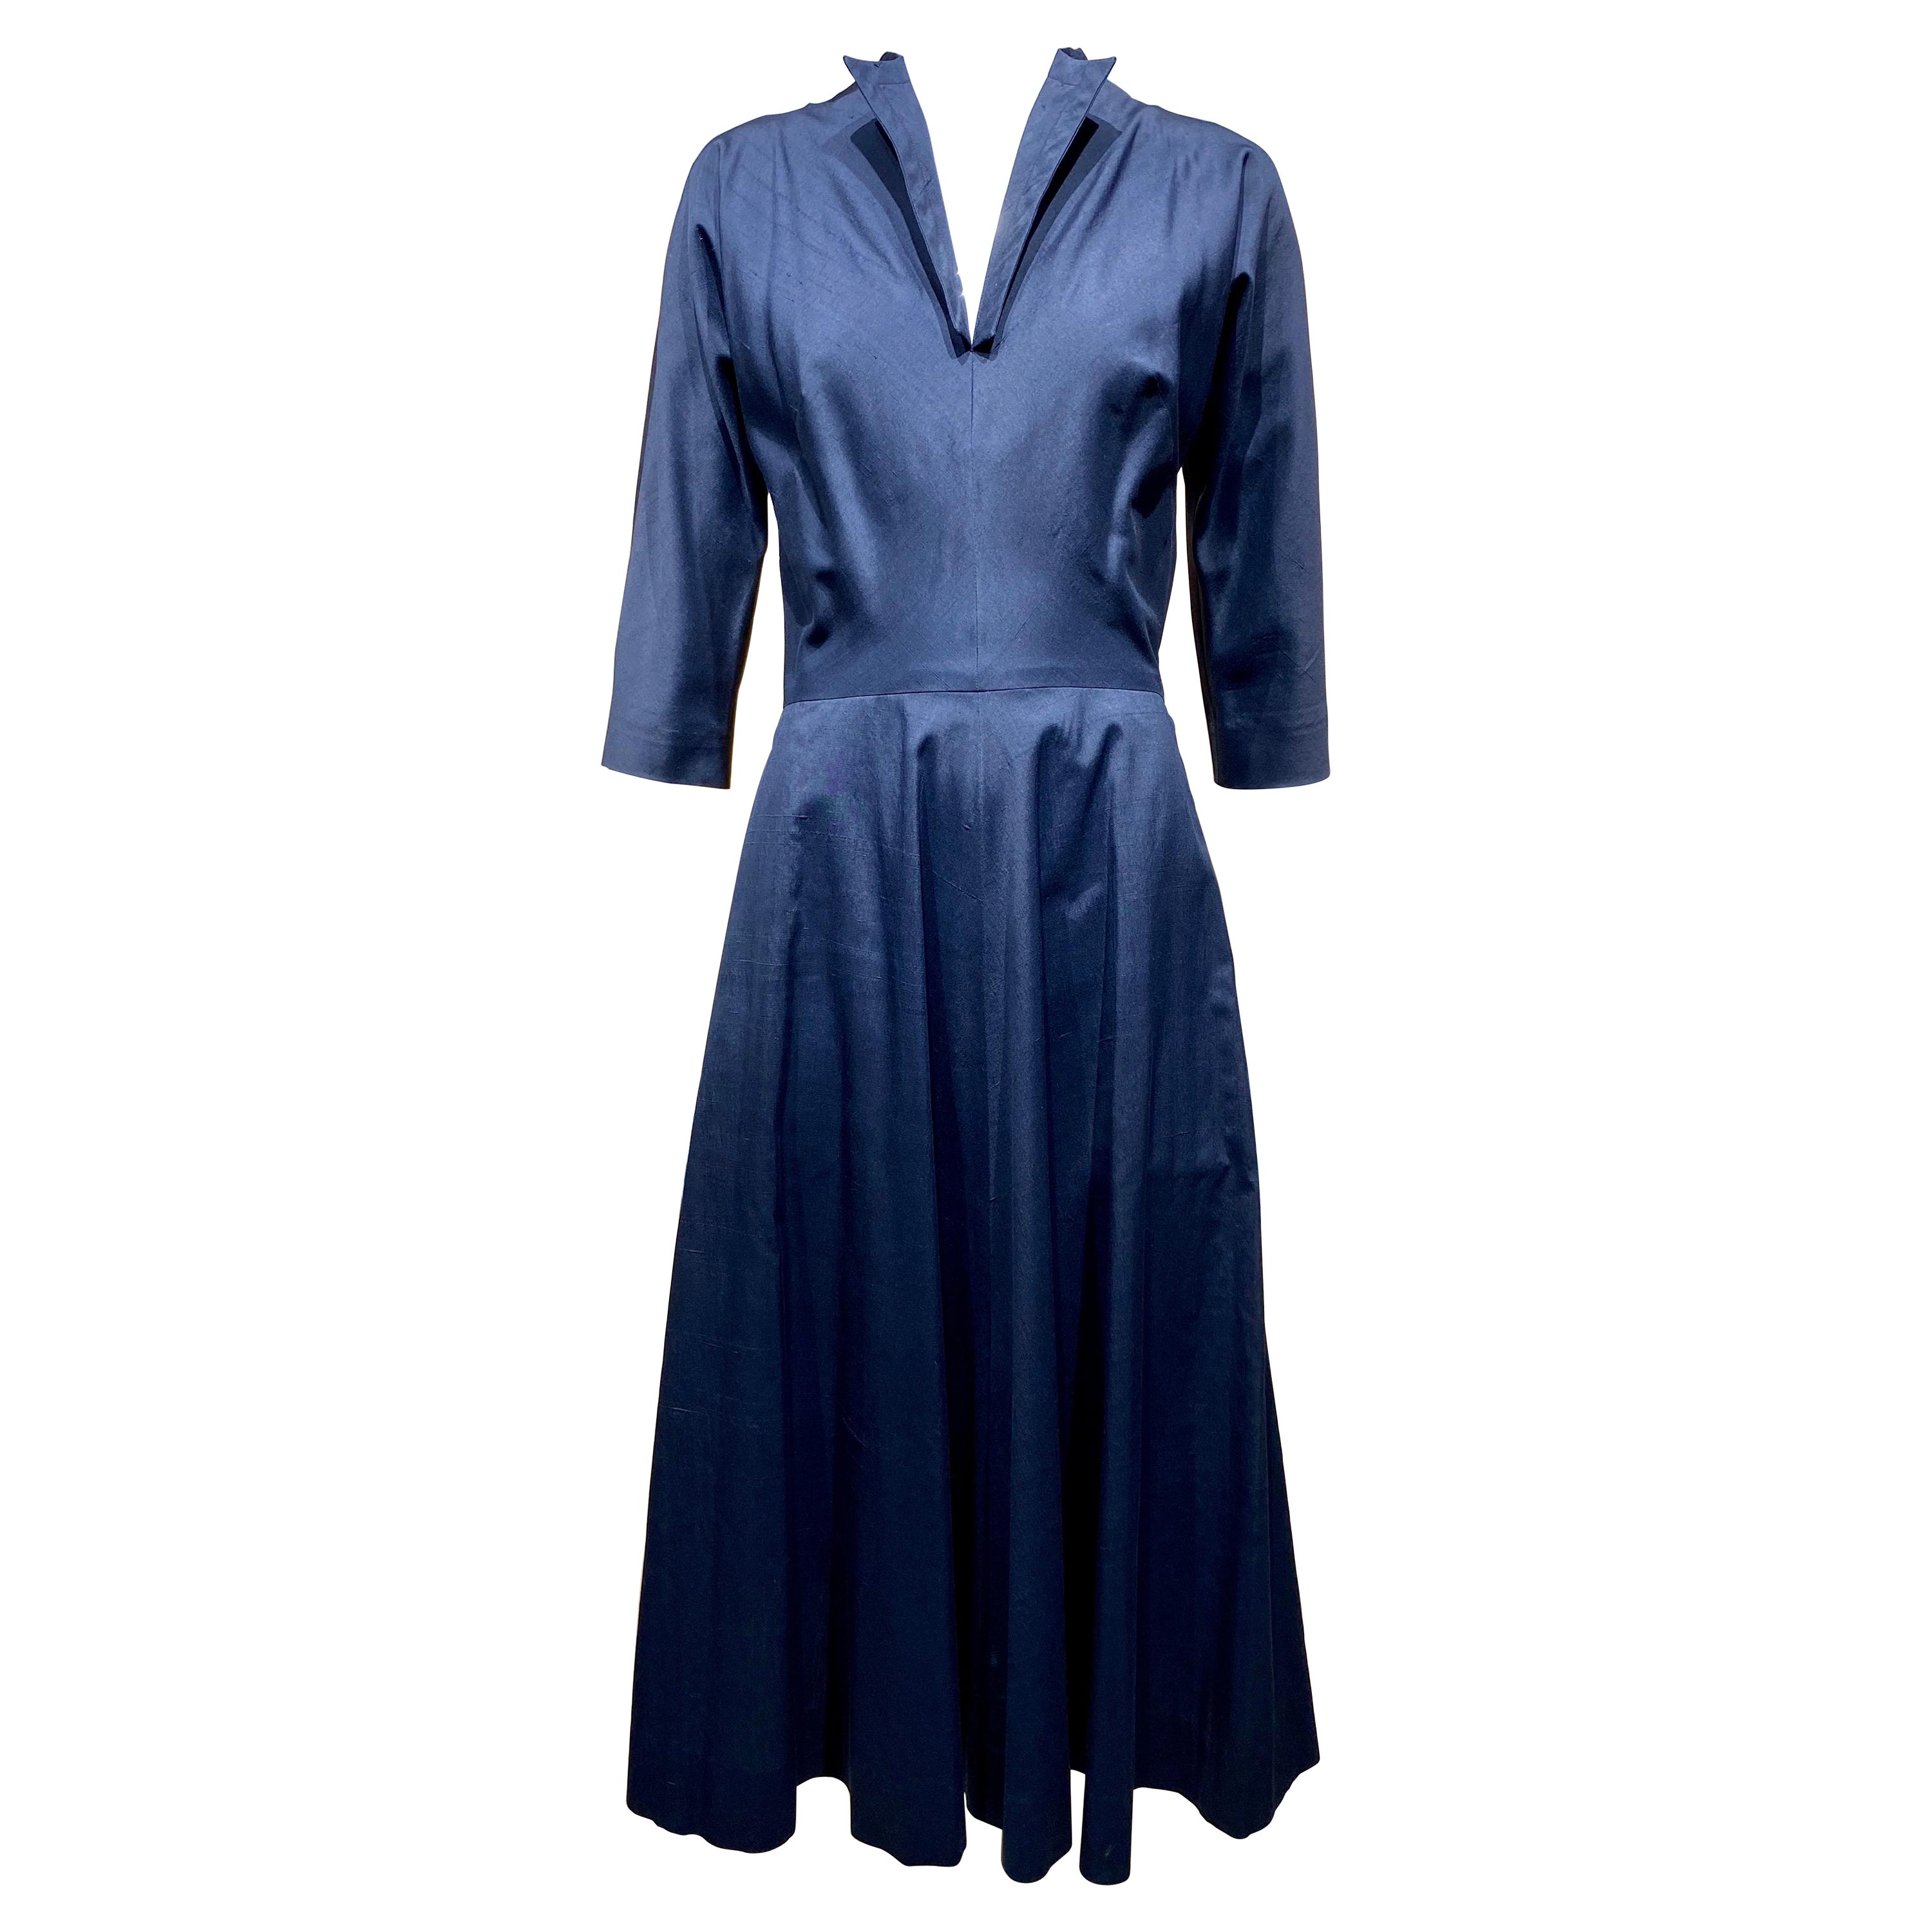 Claire McCardell - Robe en soie bleue des années 1950